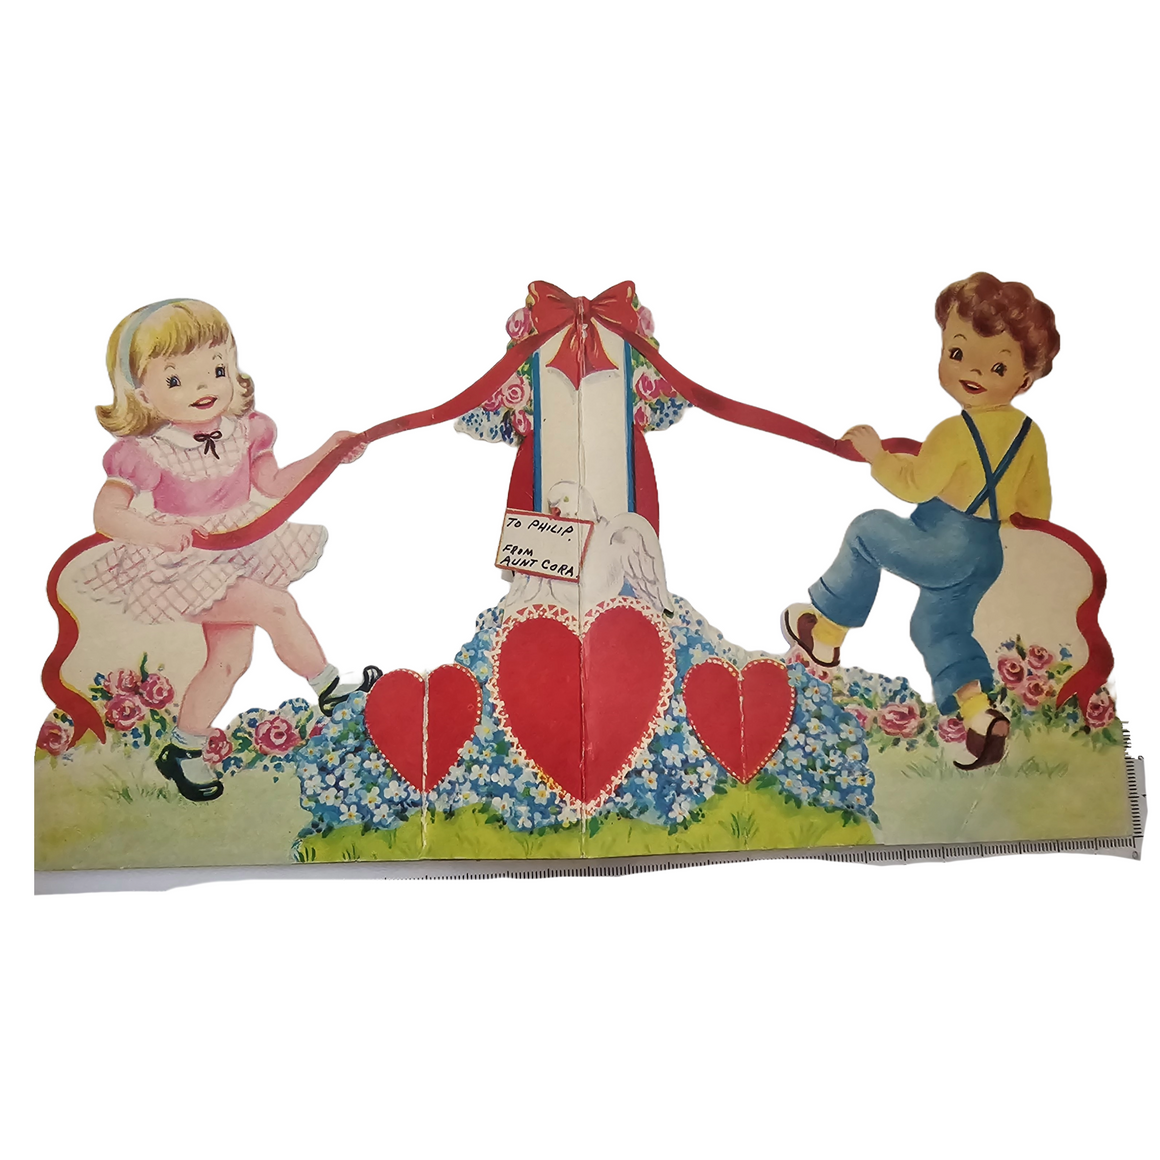 Vintage Die Cut Valentine Card Fold Out Children Playing Maypole Ring Around Rosie